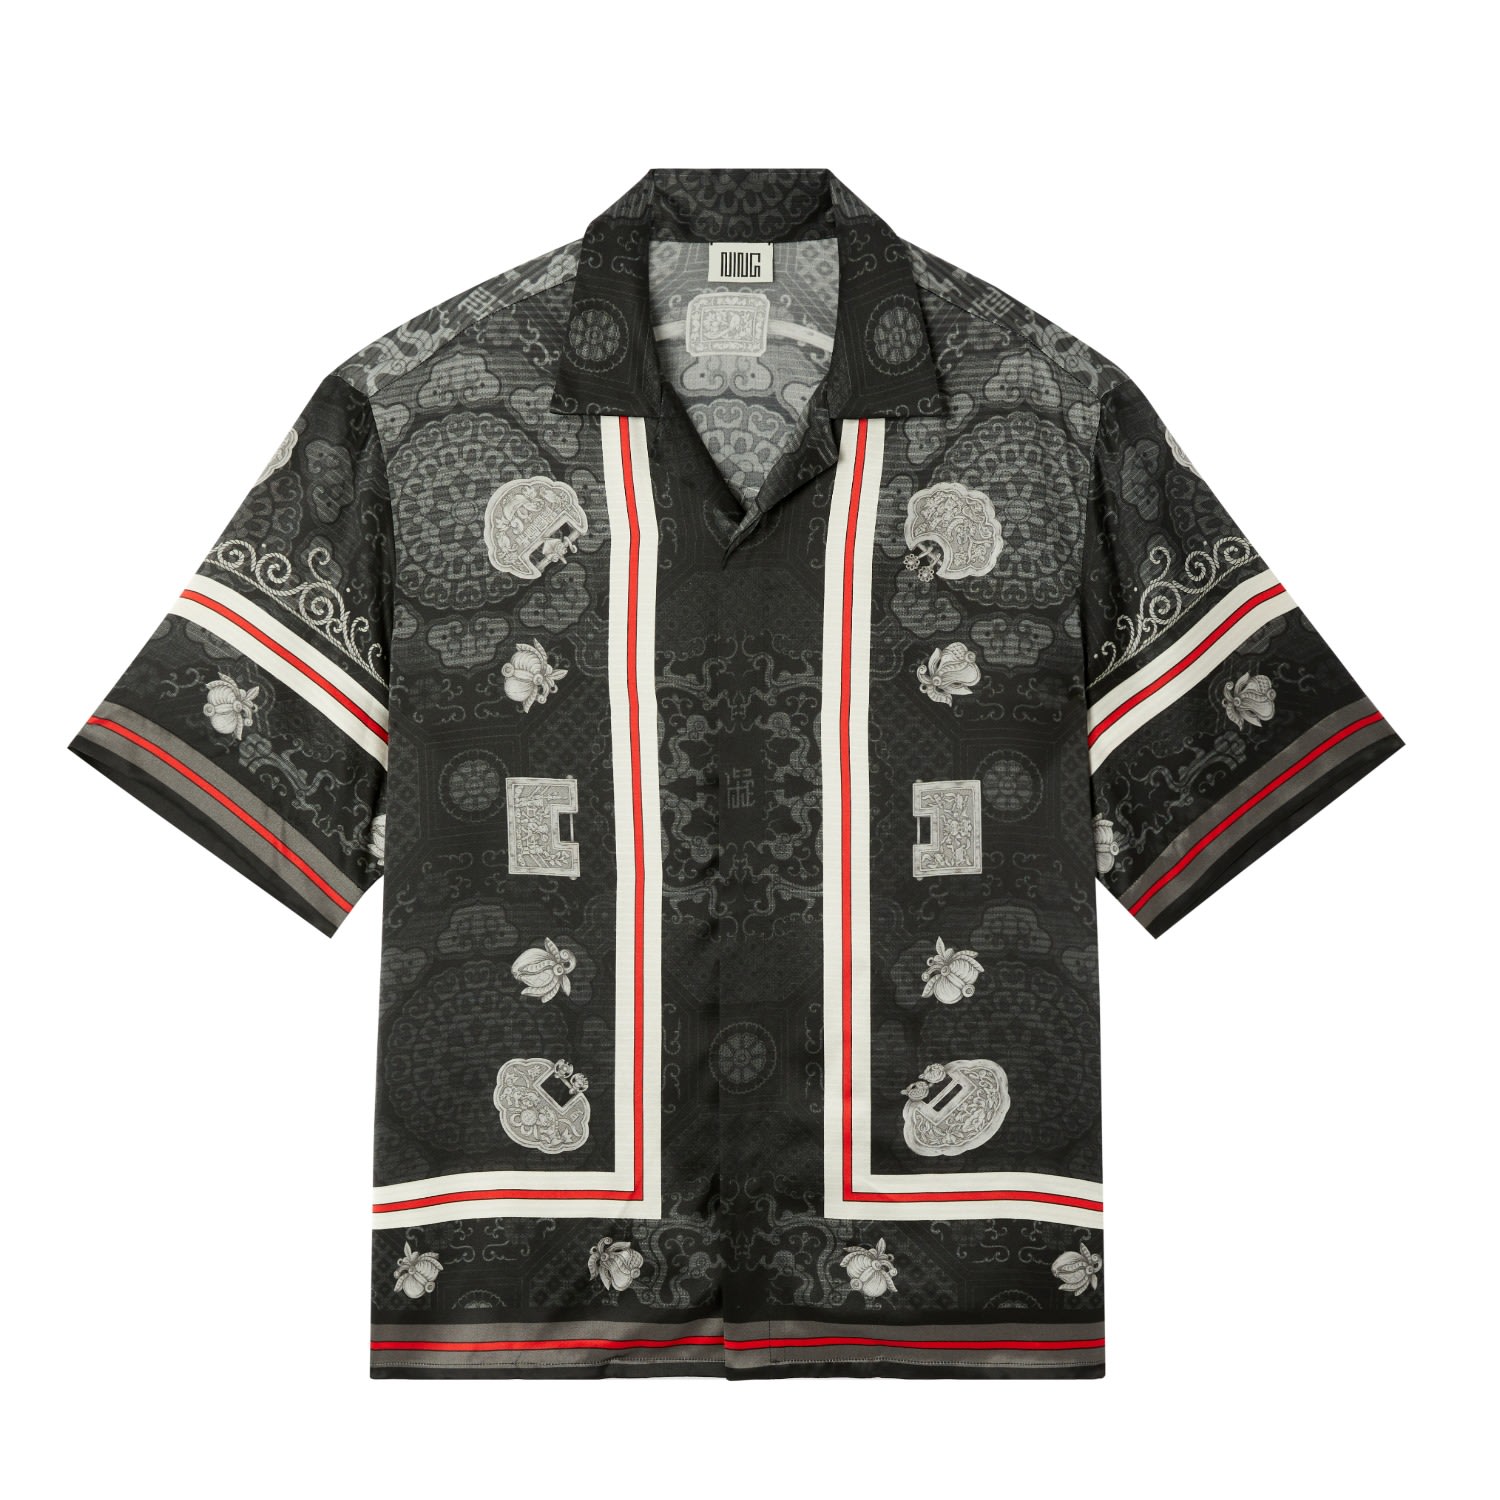 Men's Short Sleeve Imperial Locks Shirt Black Small Ning Dynasty